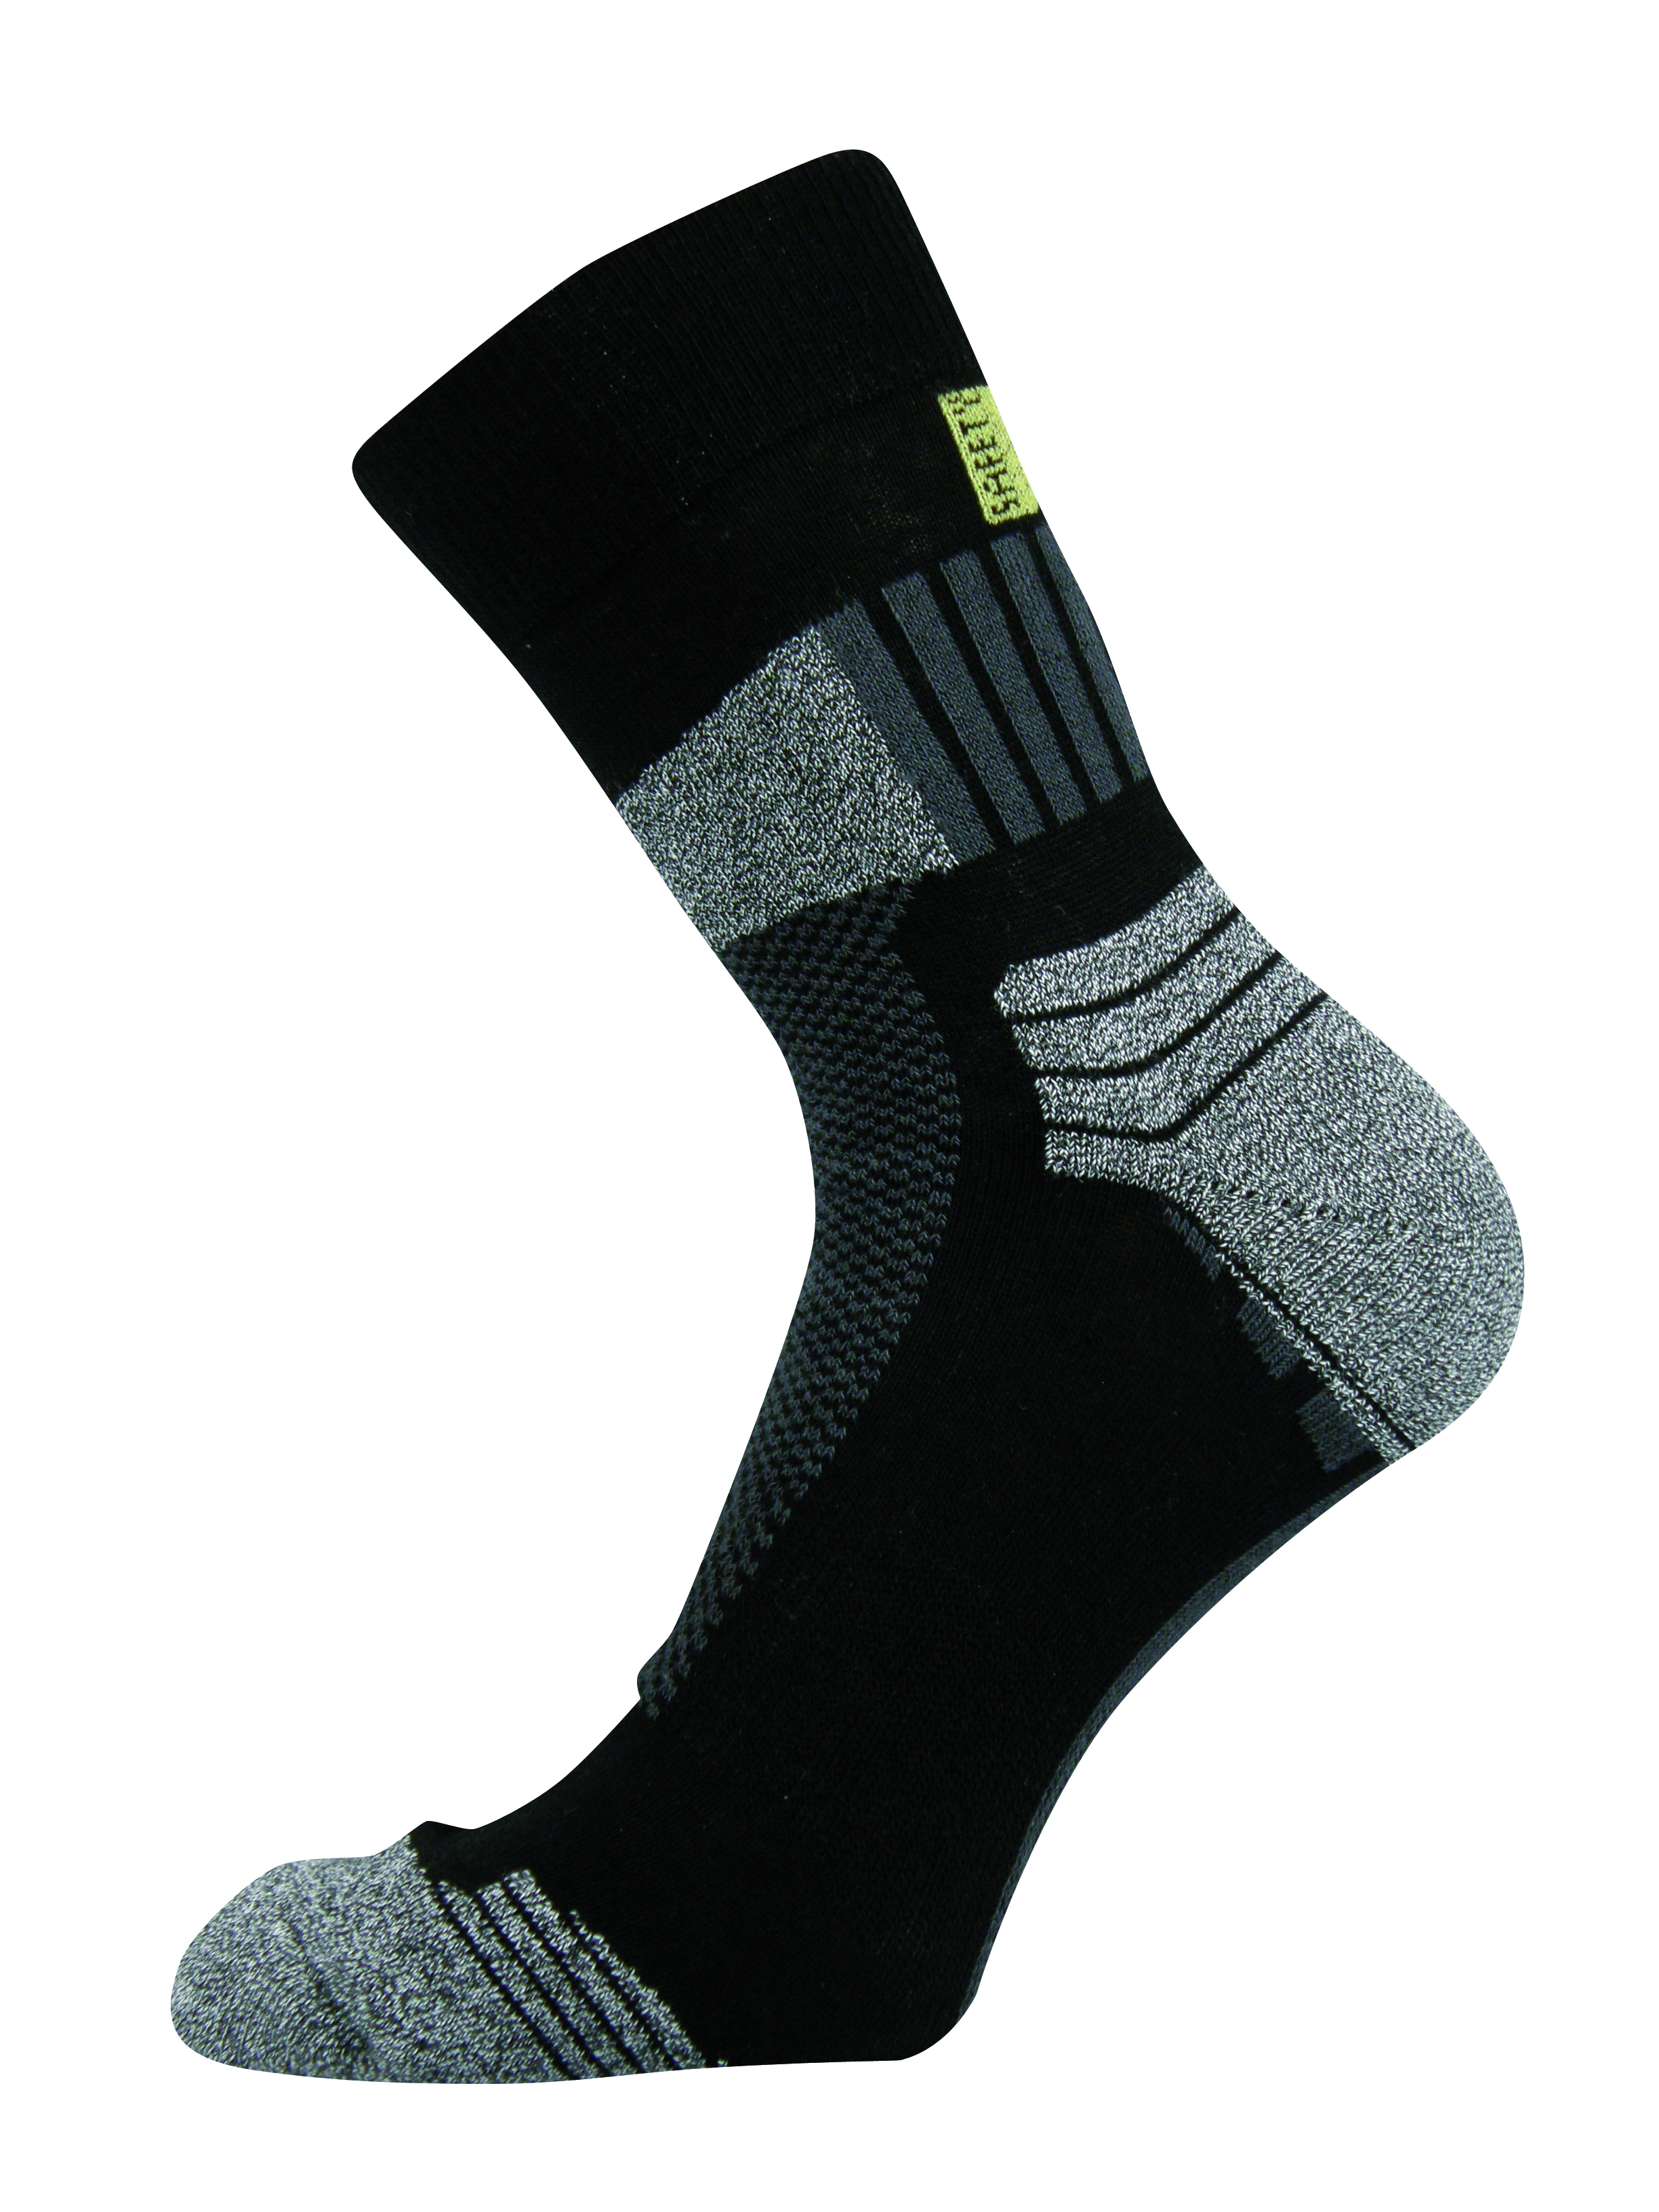 Ponožky DABIH, s elastickou bandáží proti posunu v botě